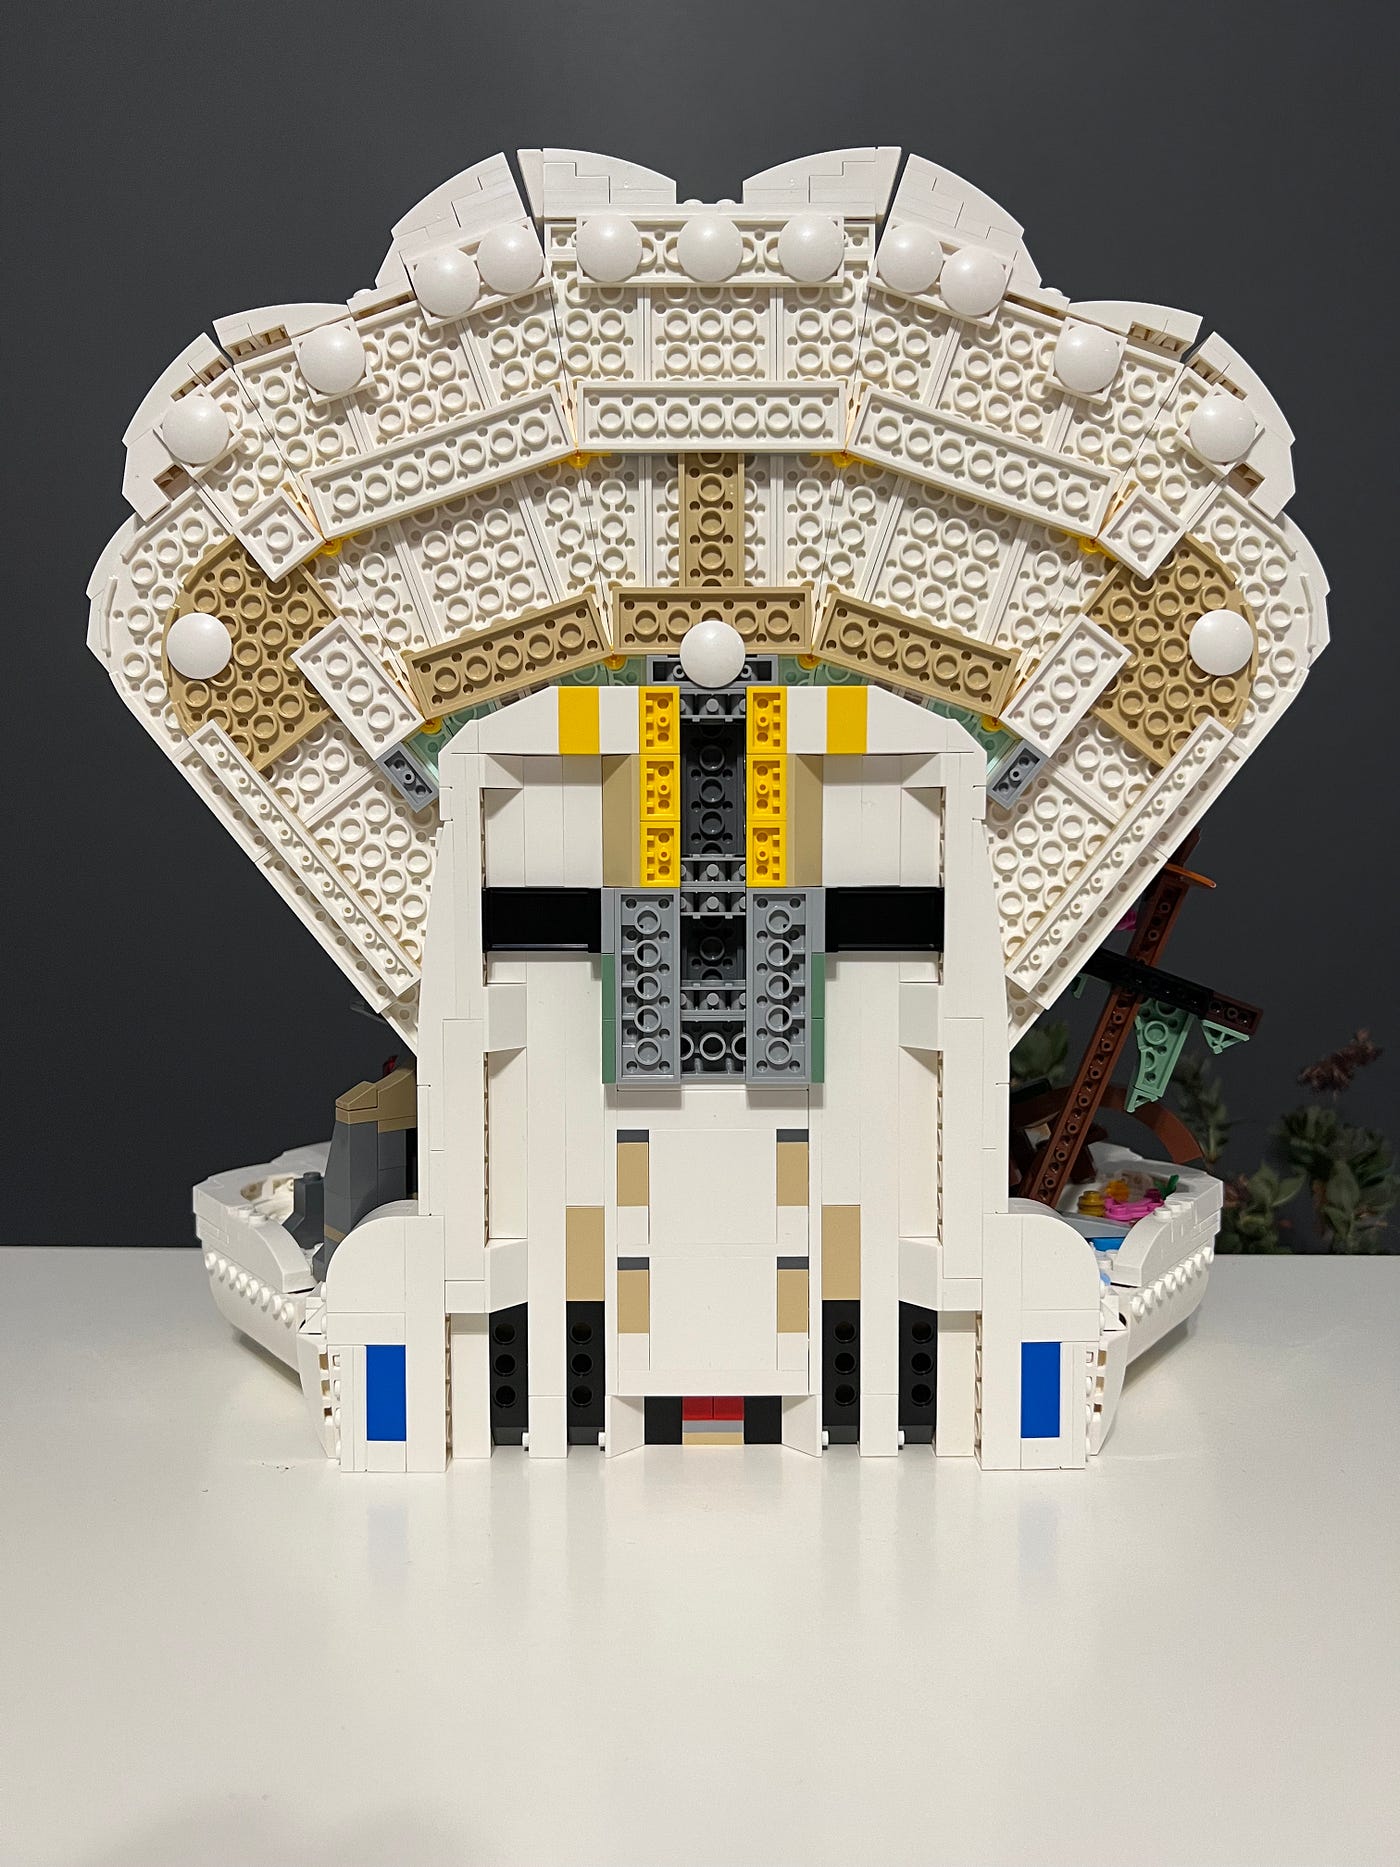 TUBE OF LEGO LIKE – Three Buoys & a Mermaid